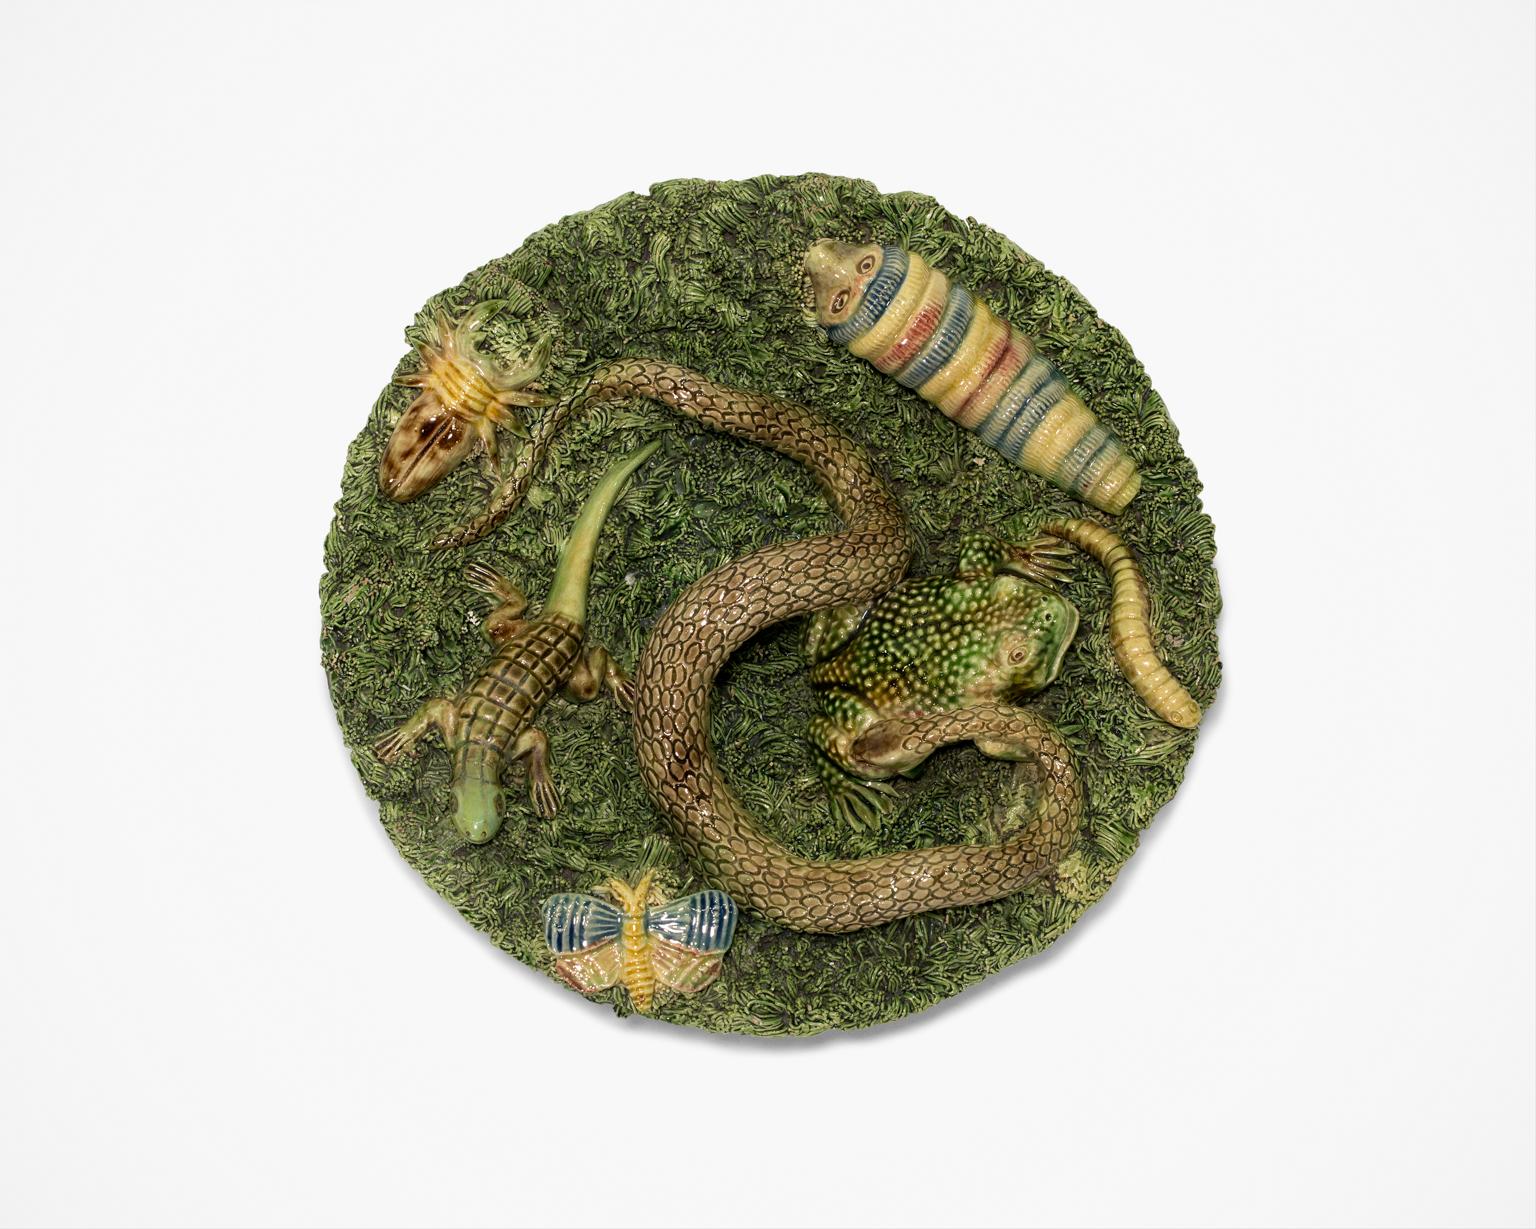 Jose A. Cunha Still-Life Sculpture - Palissy Majolica Bowl Snake Spider Frog Caterpillar Butterfly Lizard